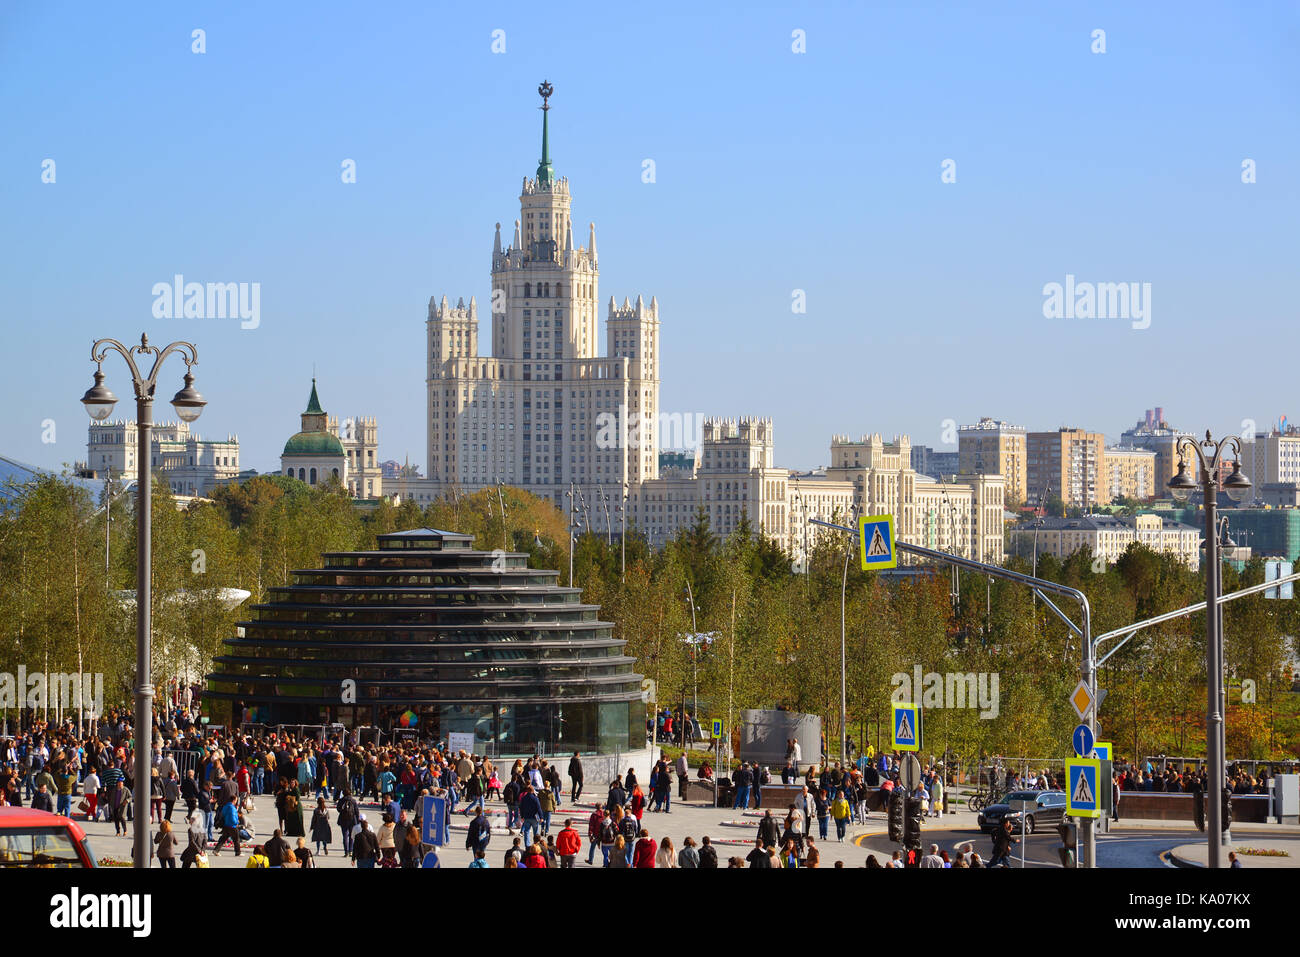 Mosca, Russia - 23 settembre. 2017. consente di visualizzare le informazioni del padiglione e ingresso al parco zaryadye. Foto Stock